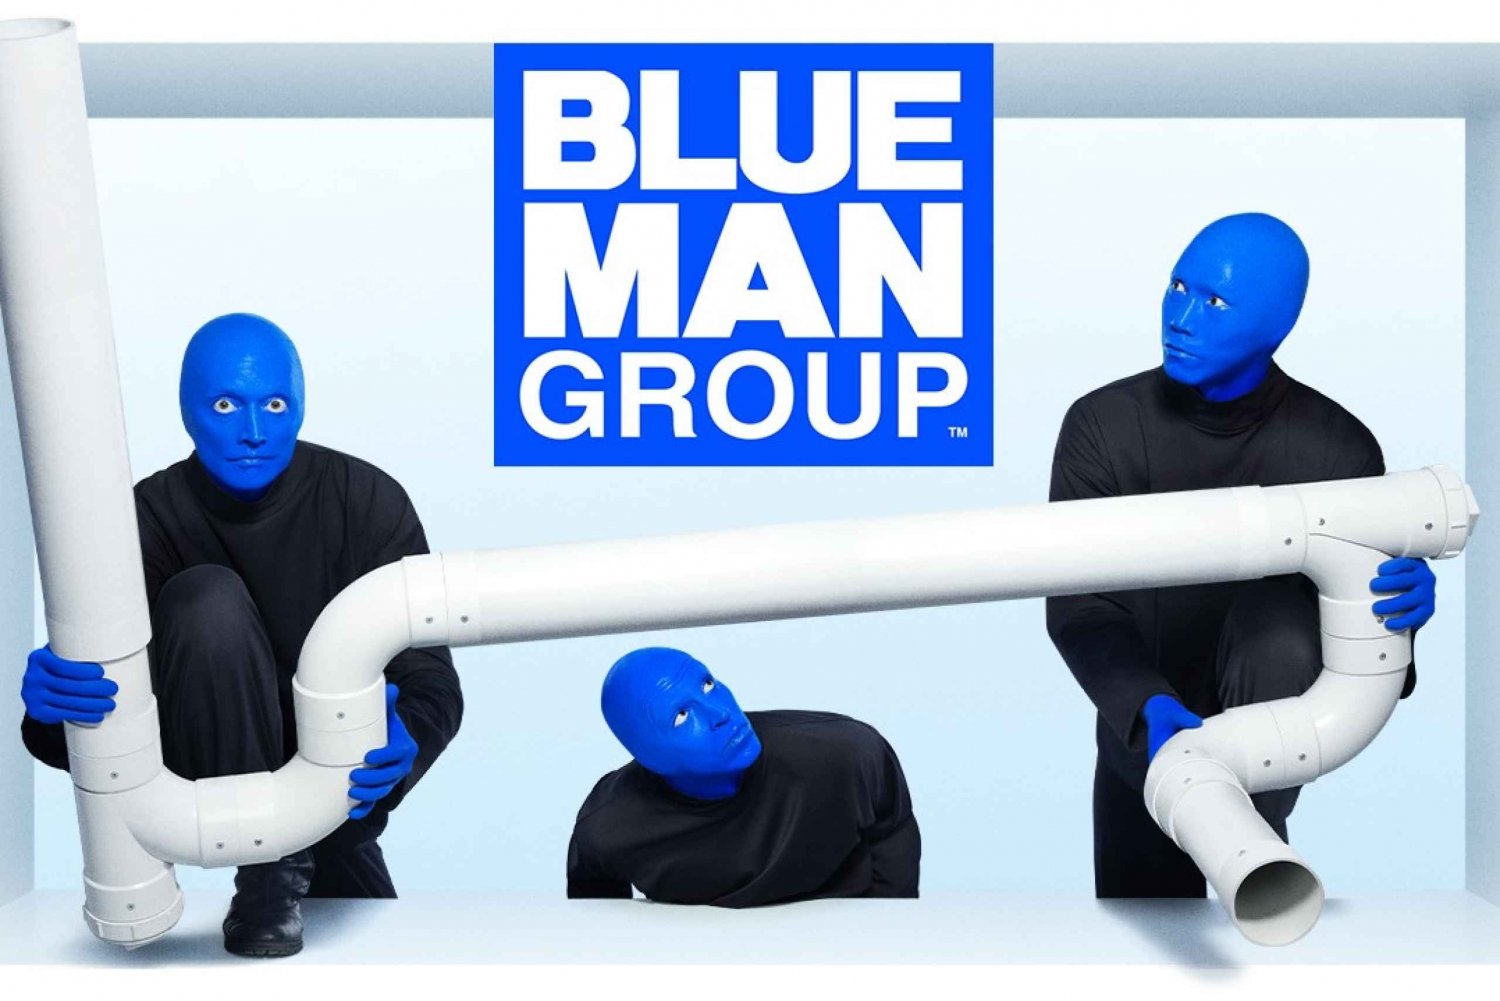 Las Vegas: ingresso para o show do Blue Man Group no Luxor Hotel